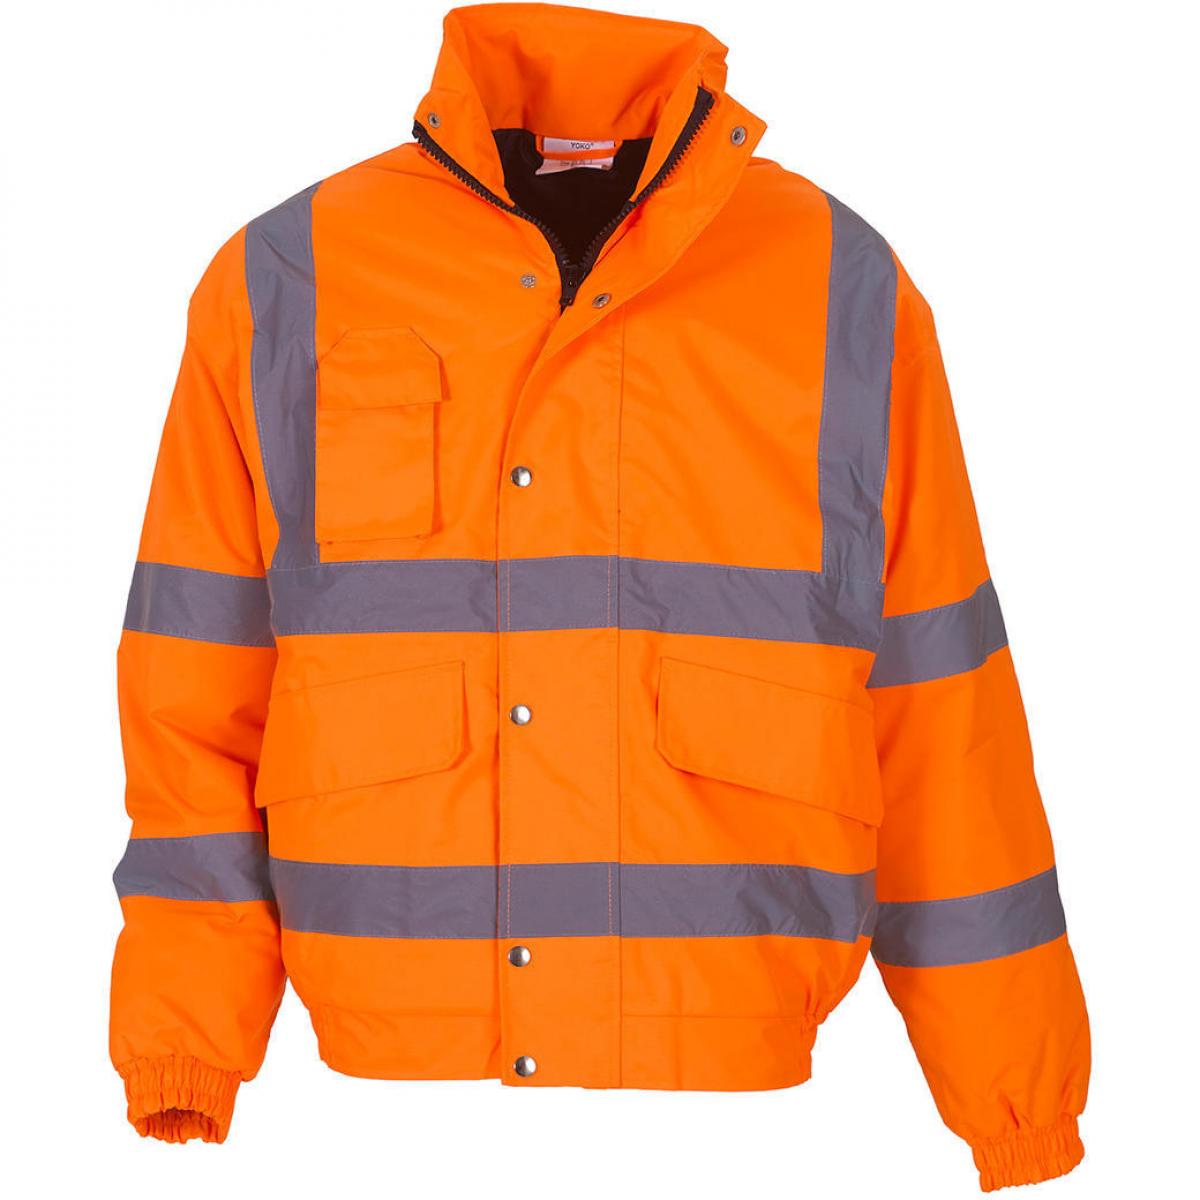 Hersteller: YOKO Herstellernummer: HVP211 Artikelbezeichnung: HiVis Fluo Bomber Jacke - Sicherheitsjacke Farbe: Fluo Orange